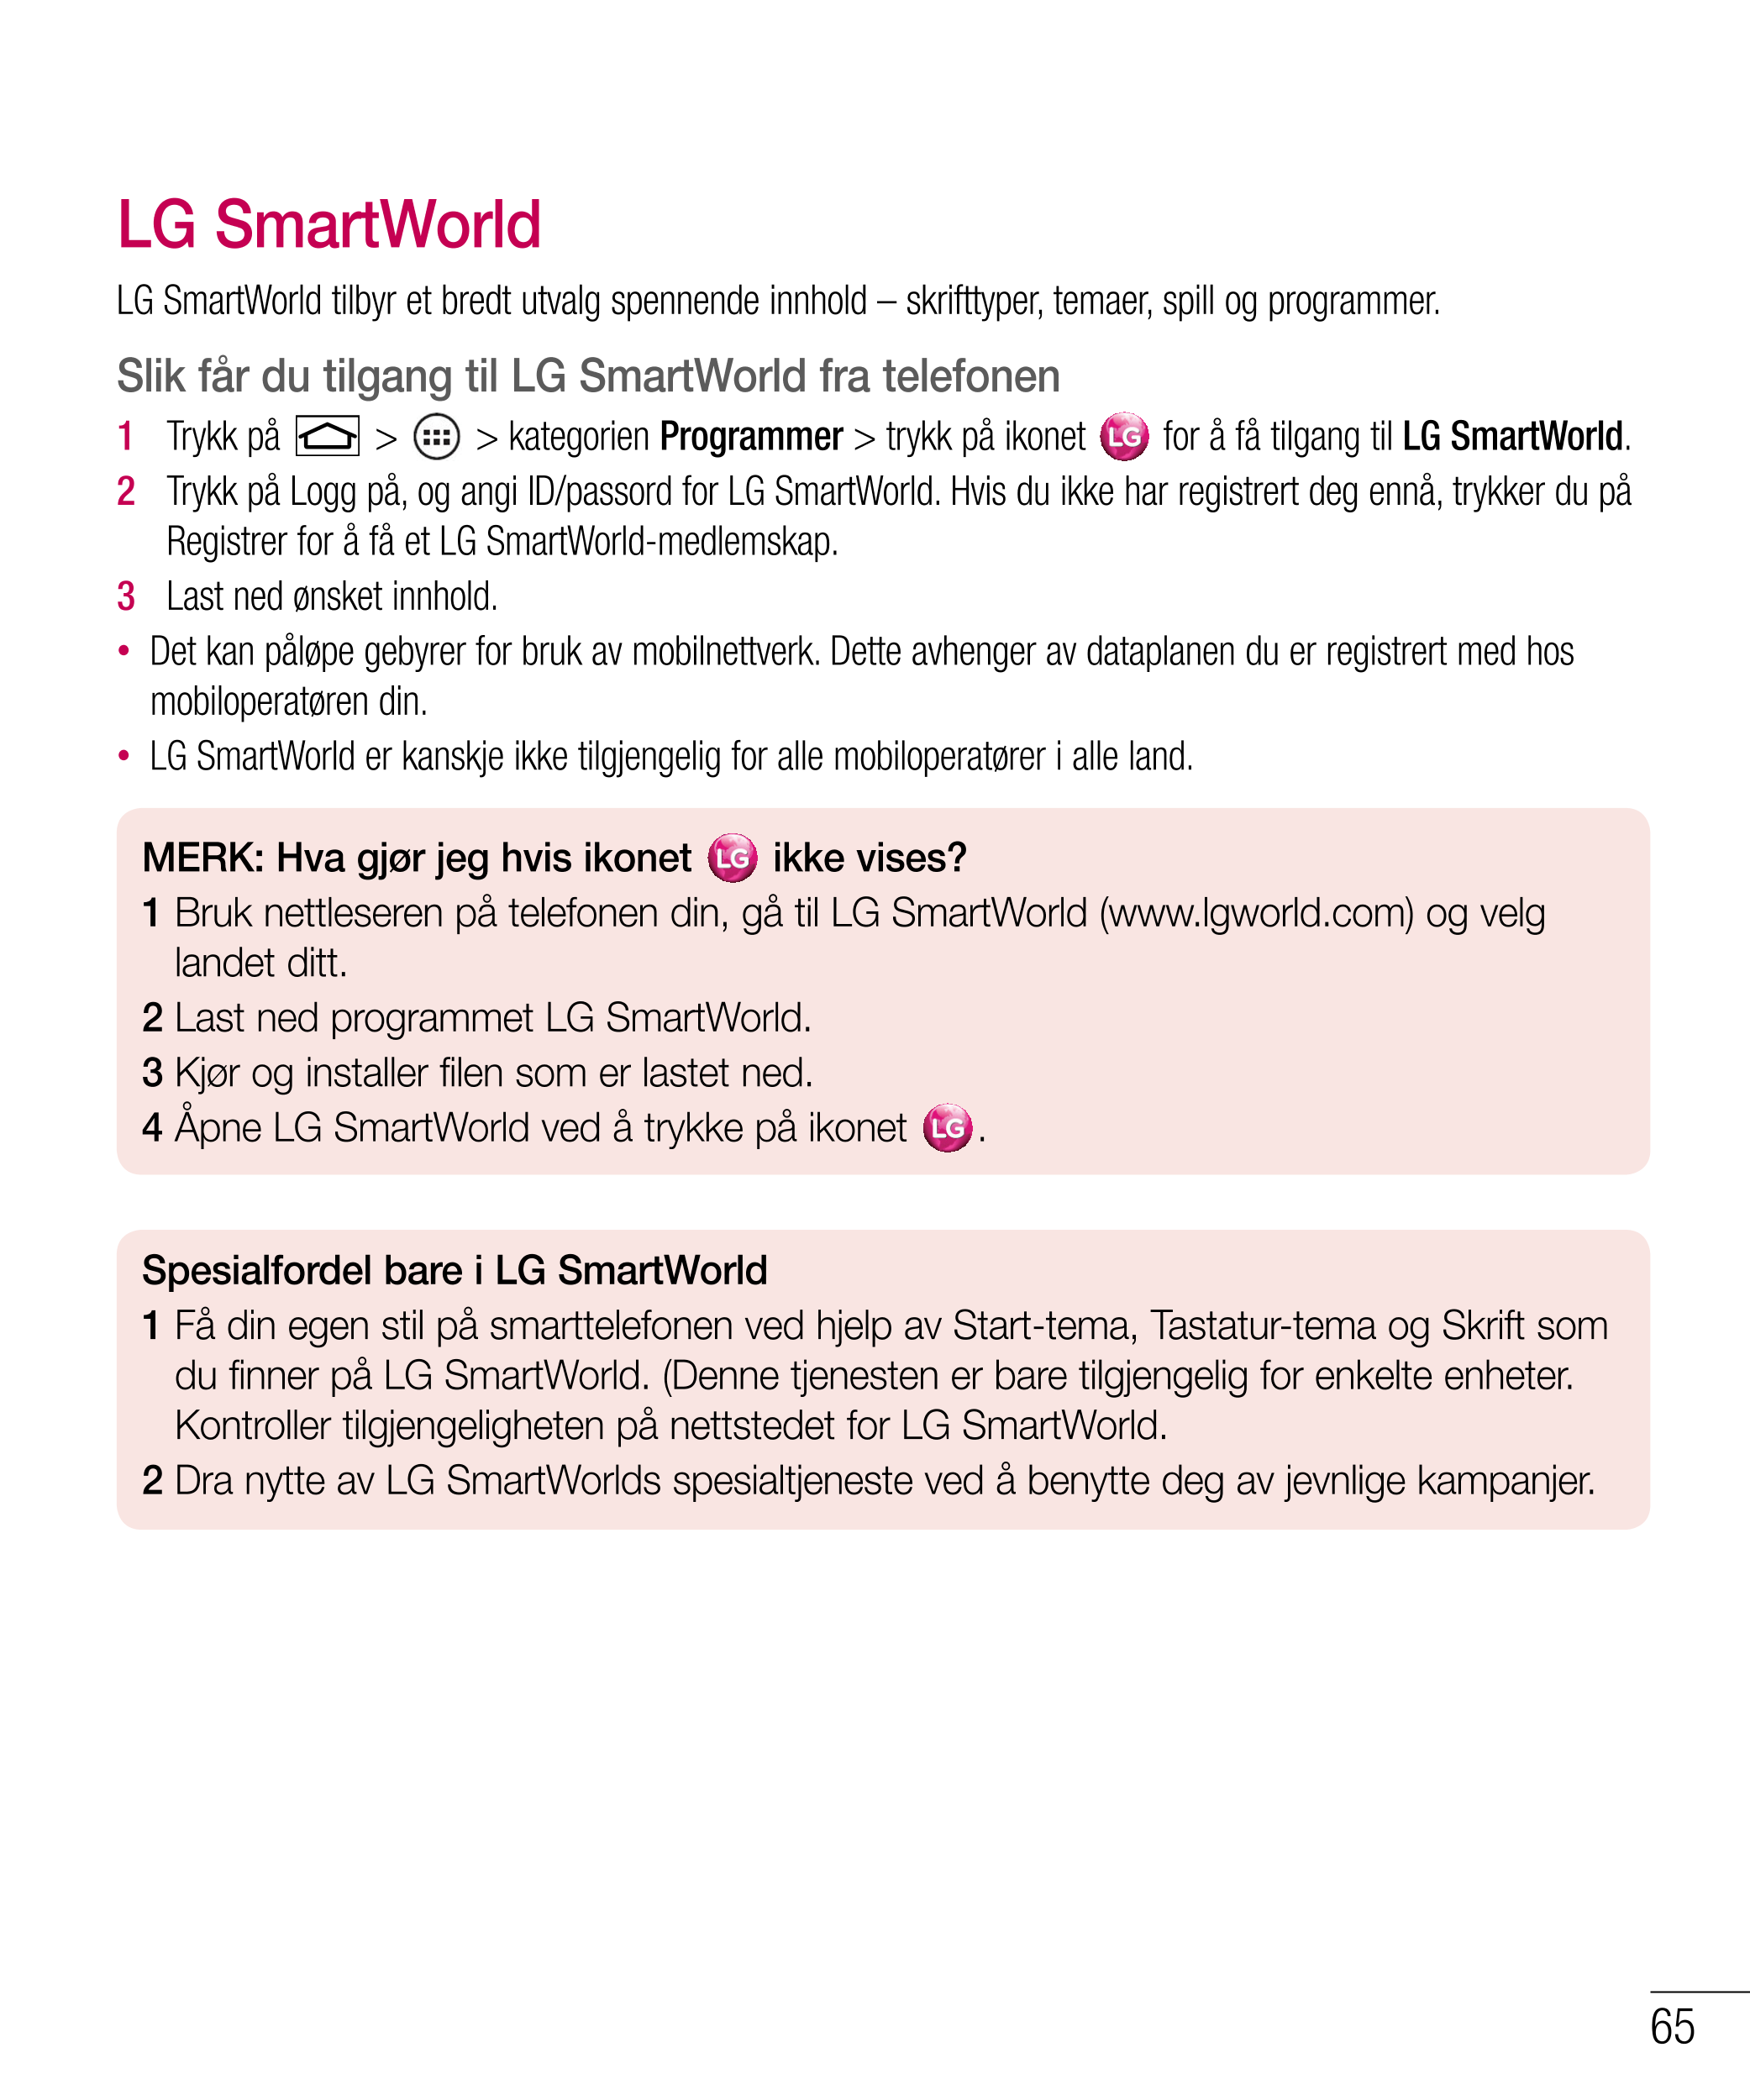 LG SmartWorld
LG SmartWorld tilbyr et bredt utvalg spennende innhold – skrifttyper, temaer, spill og programmer.
Slik får du til